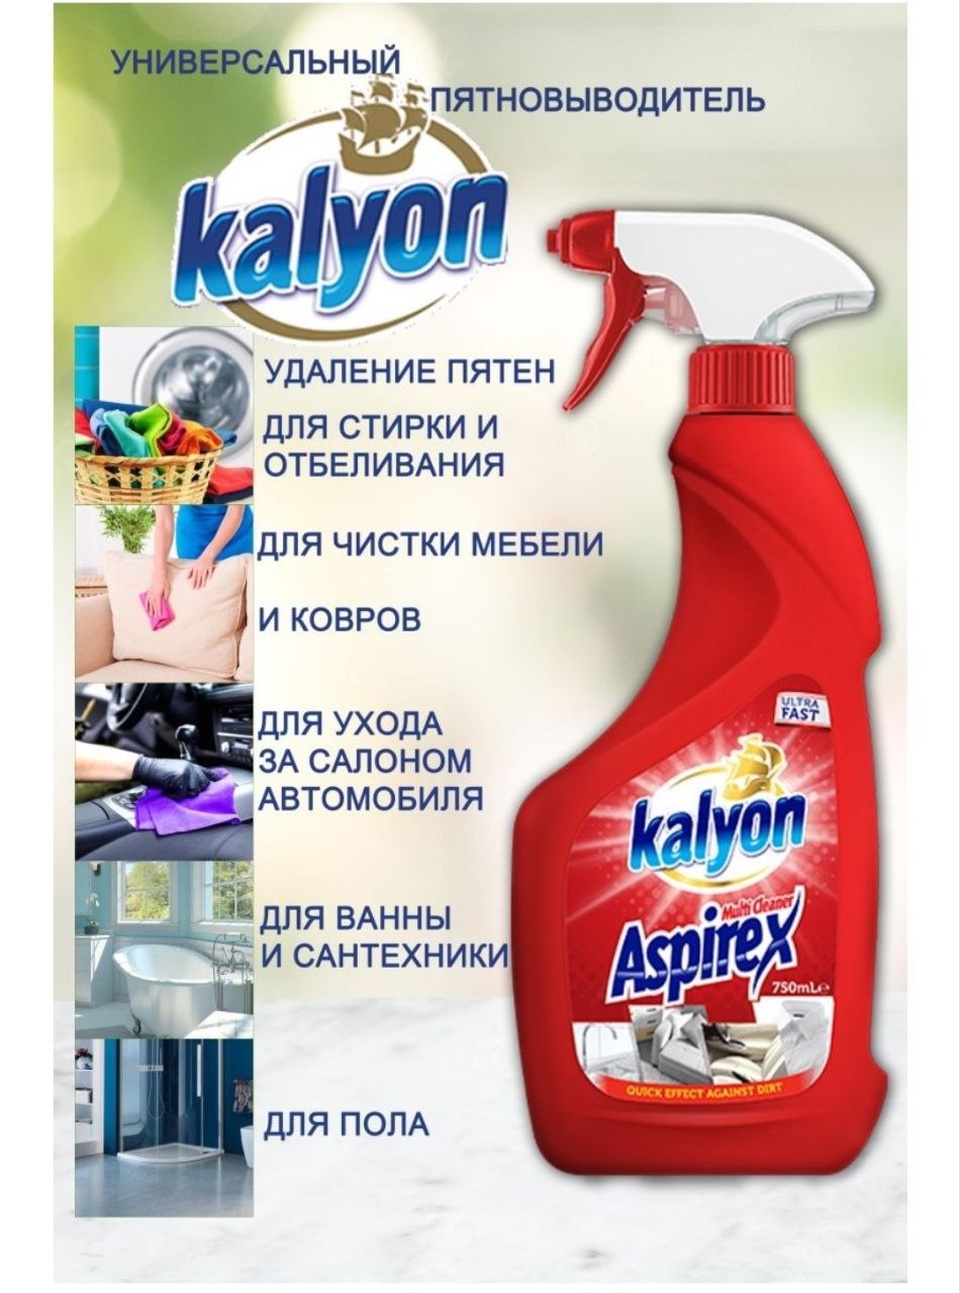 Универсальный пятновыводитель Kalyon 750 мл - 260 ₽, заказать онлайн.